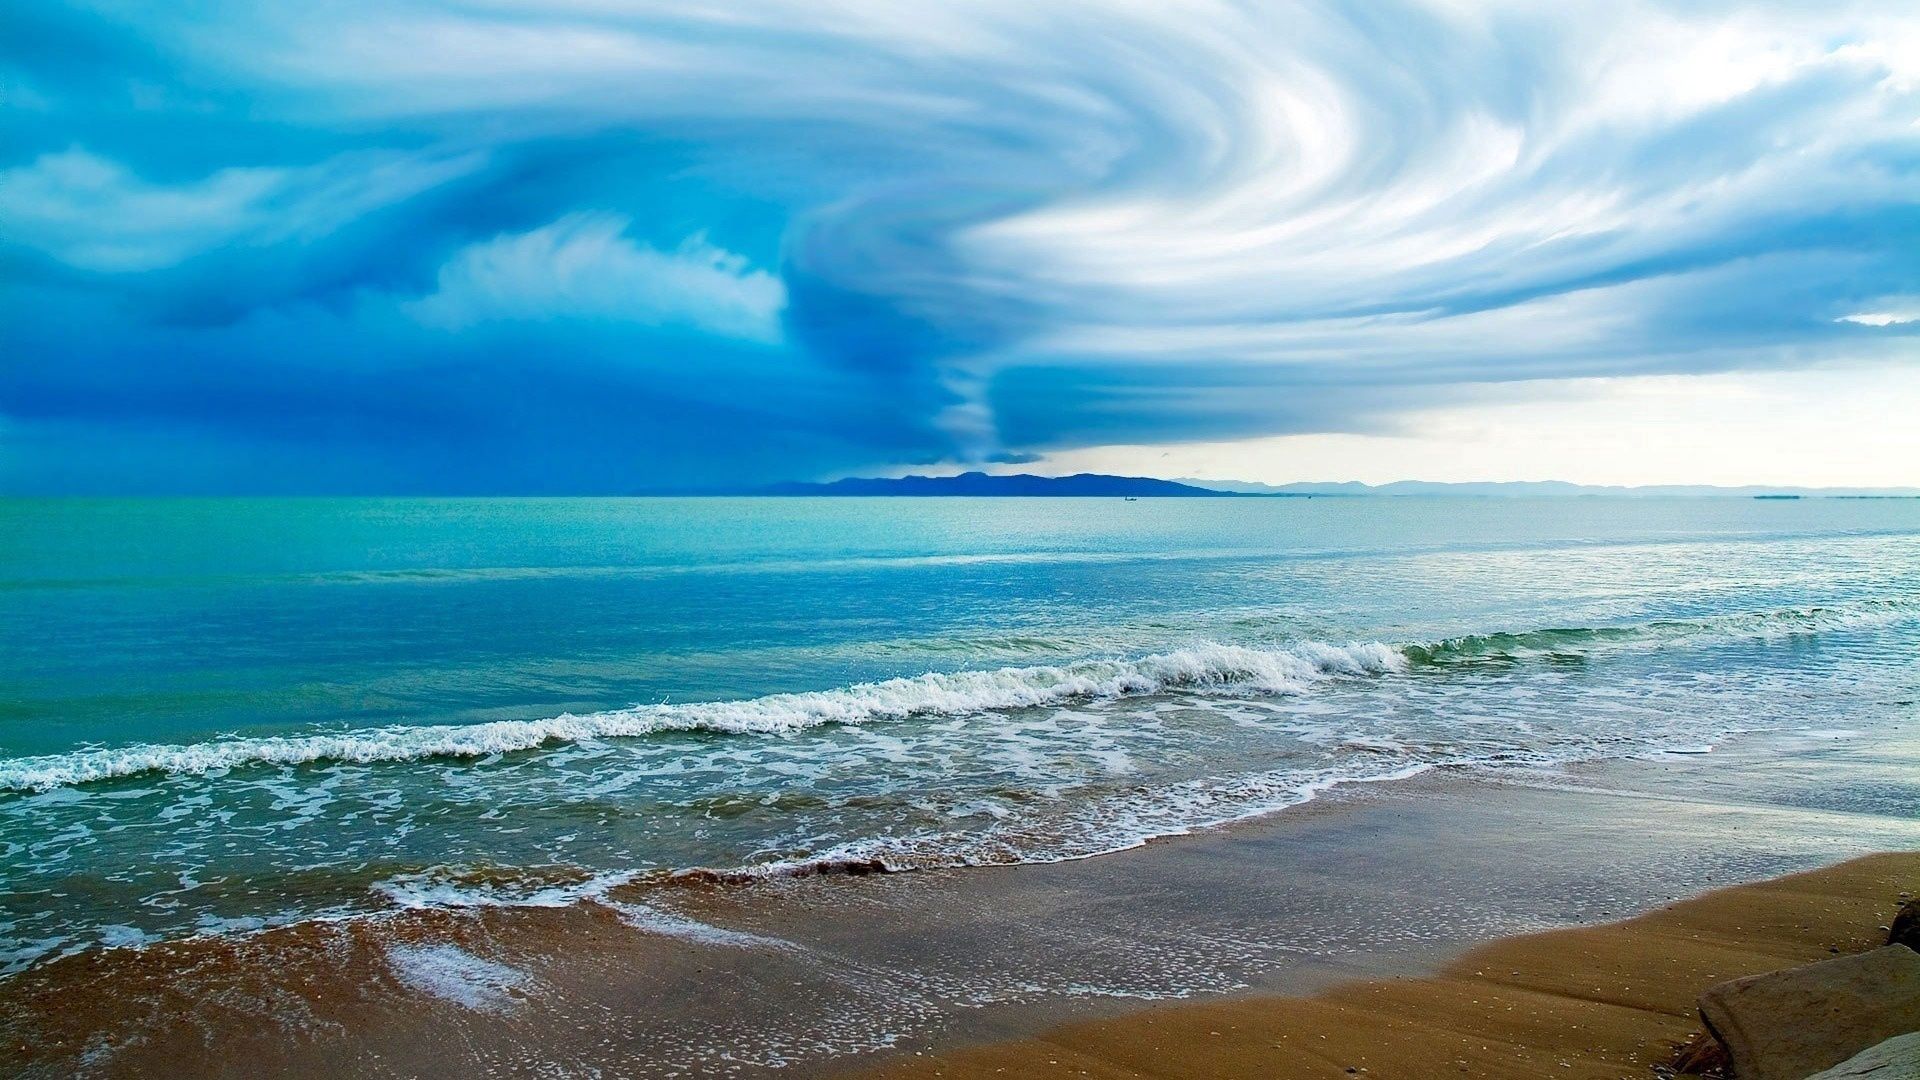 Widescreen image typhoon, shore, ocean, clouds